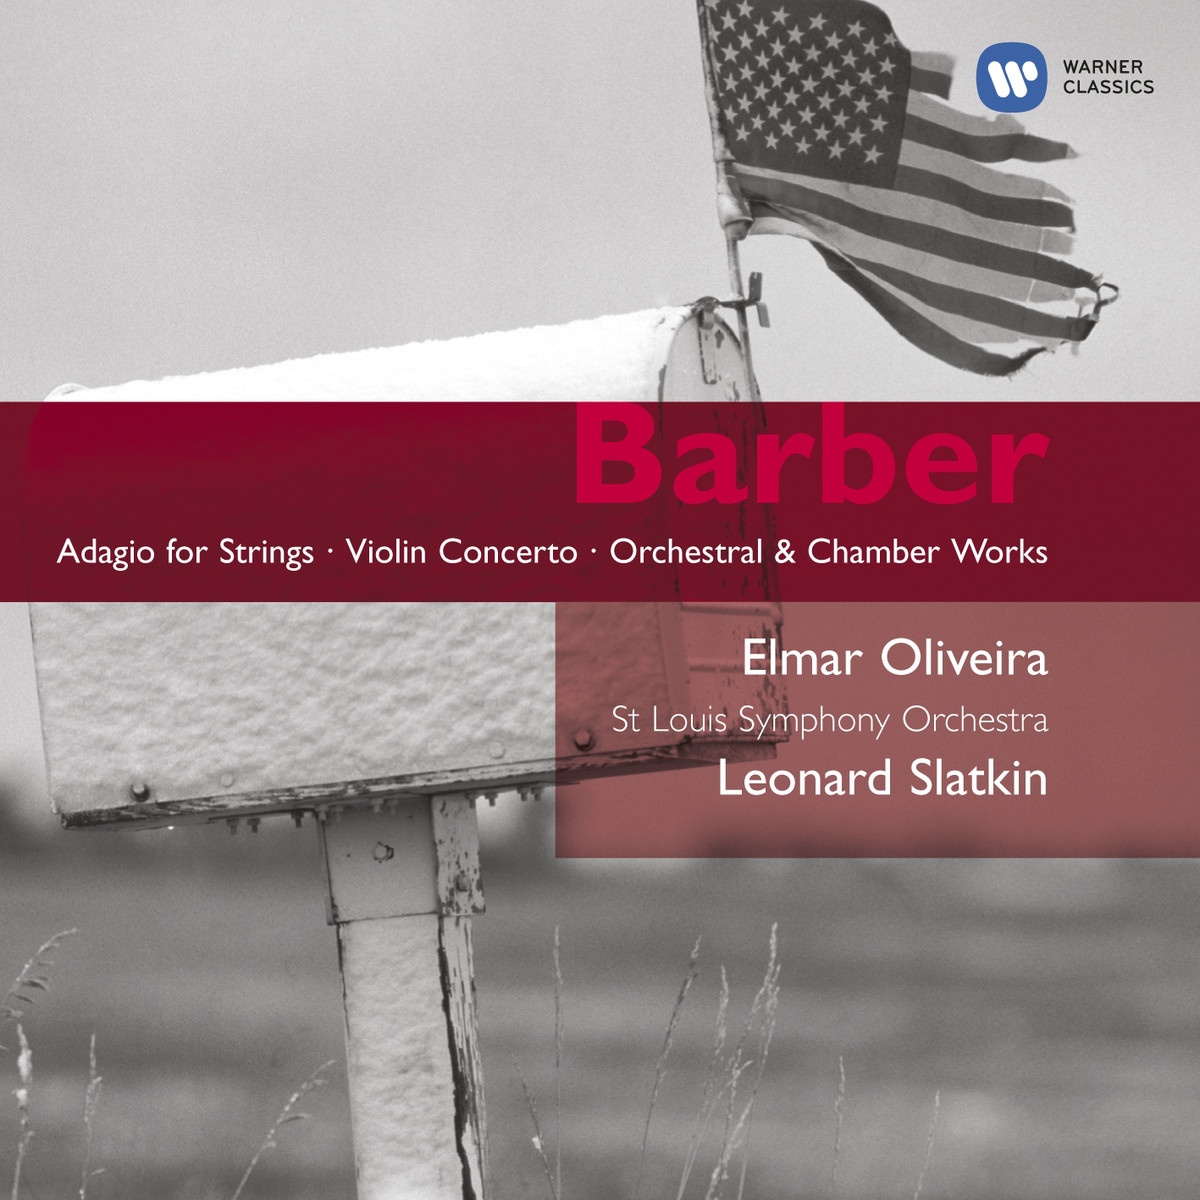 Adagio for Strings Op. 11